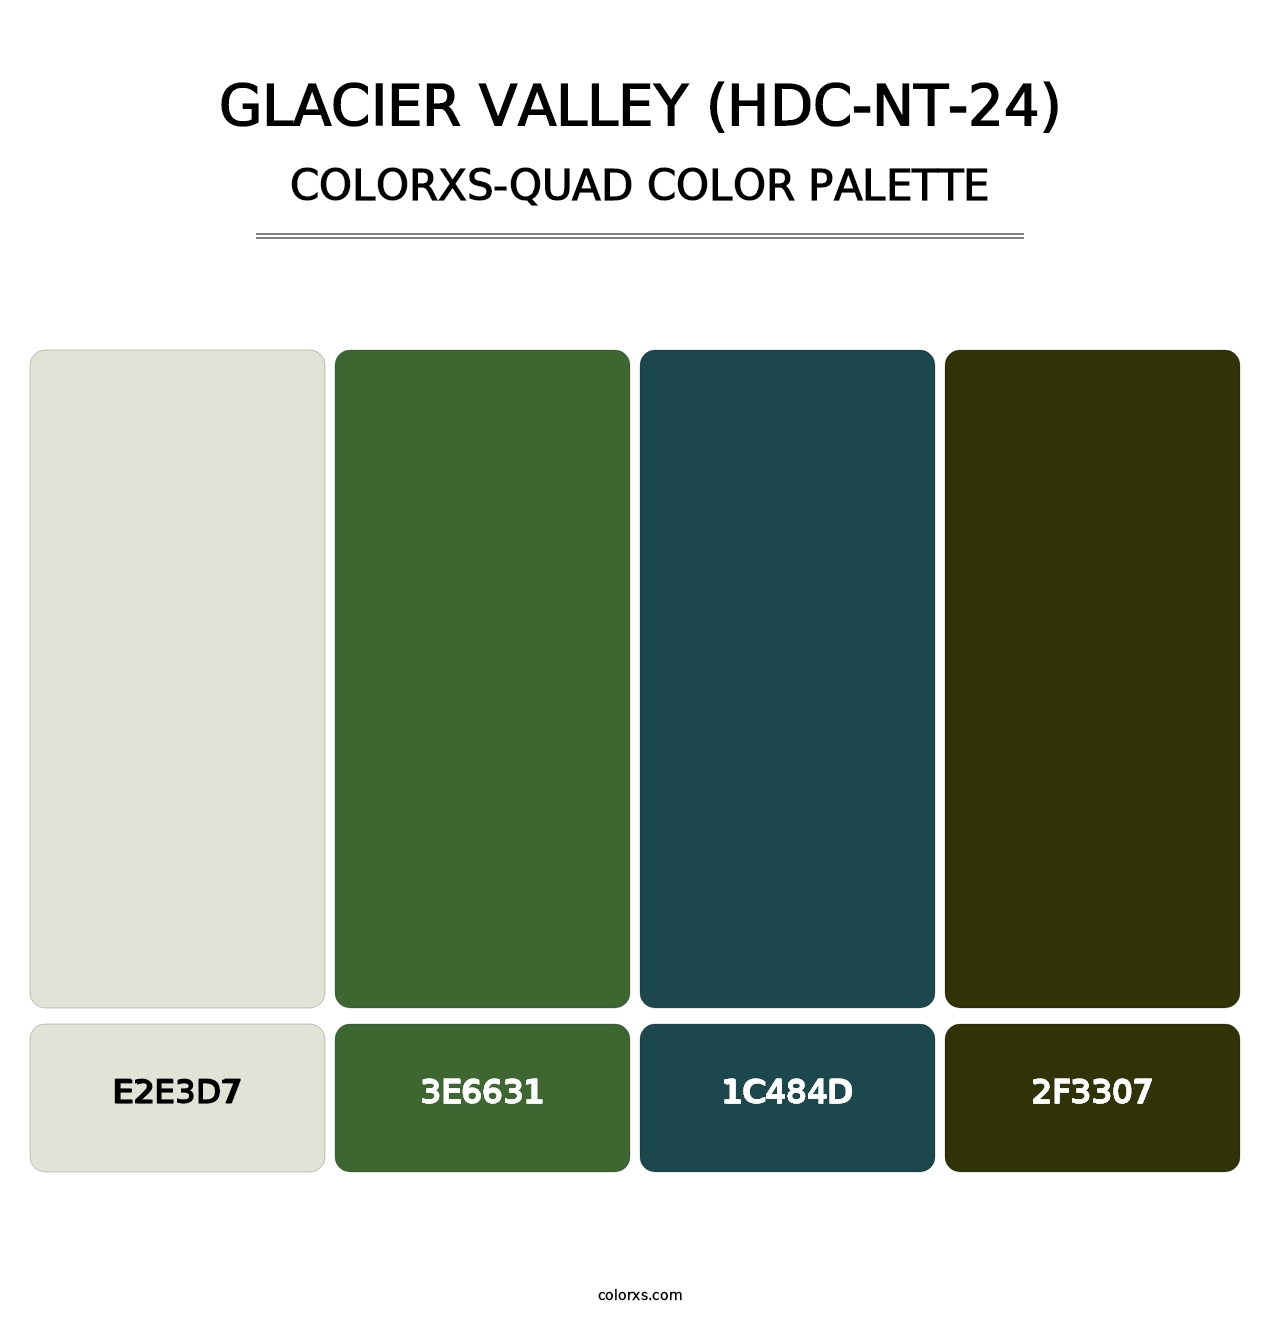 Glacier Valley (HDC-NT-24) - Colorxs Quad Palette